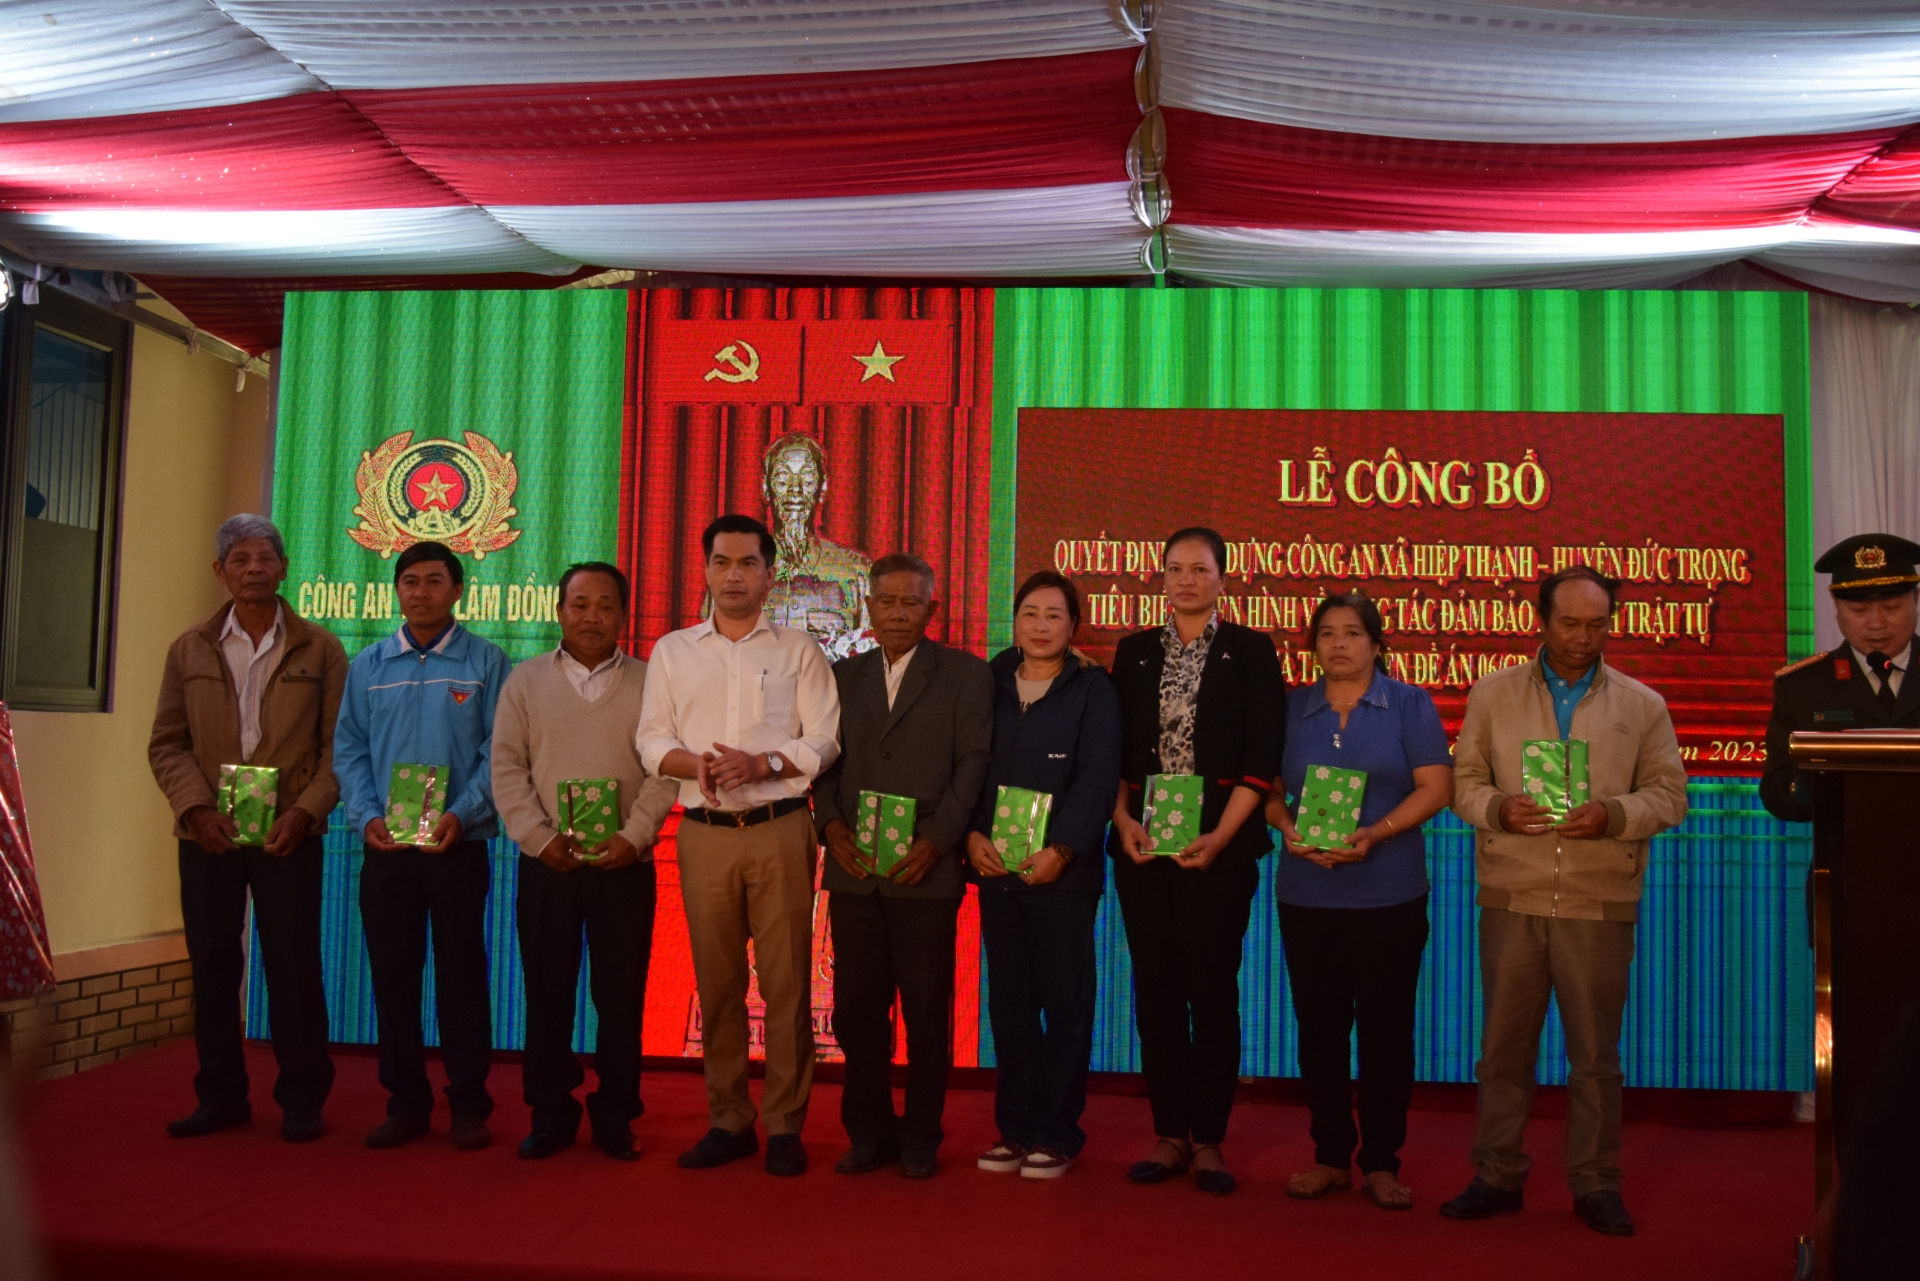 Ông Phan Quang Thạnh – Chủ tịch UBND xã Hiệp Thạnh, tặng quà cho các đại biểu là người có chức sắc, người có uy tín, trưởng các thôn.